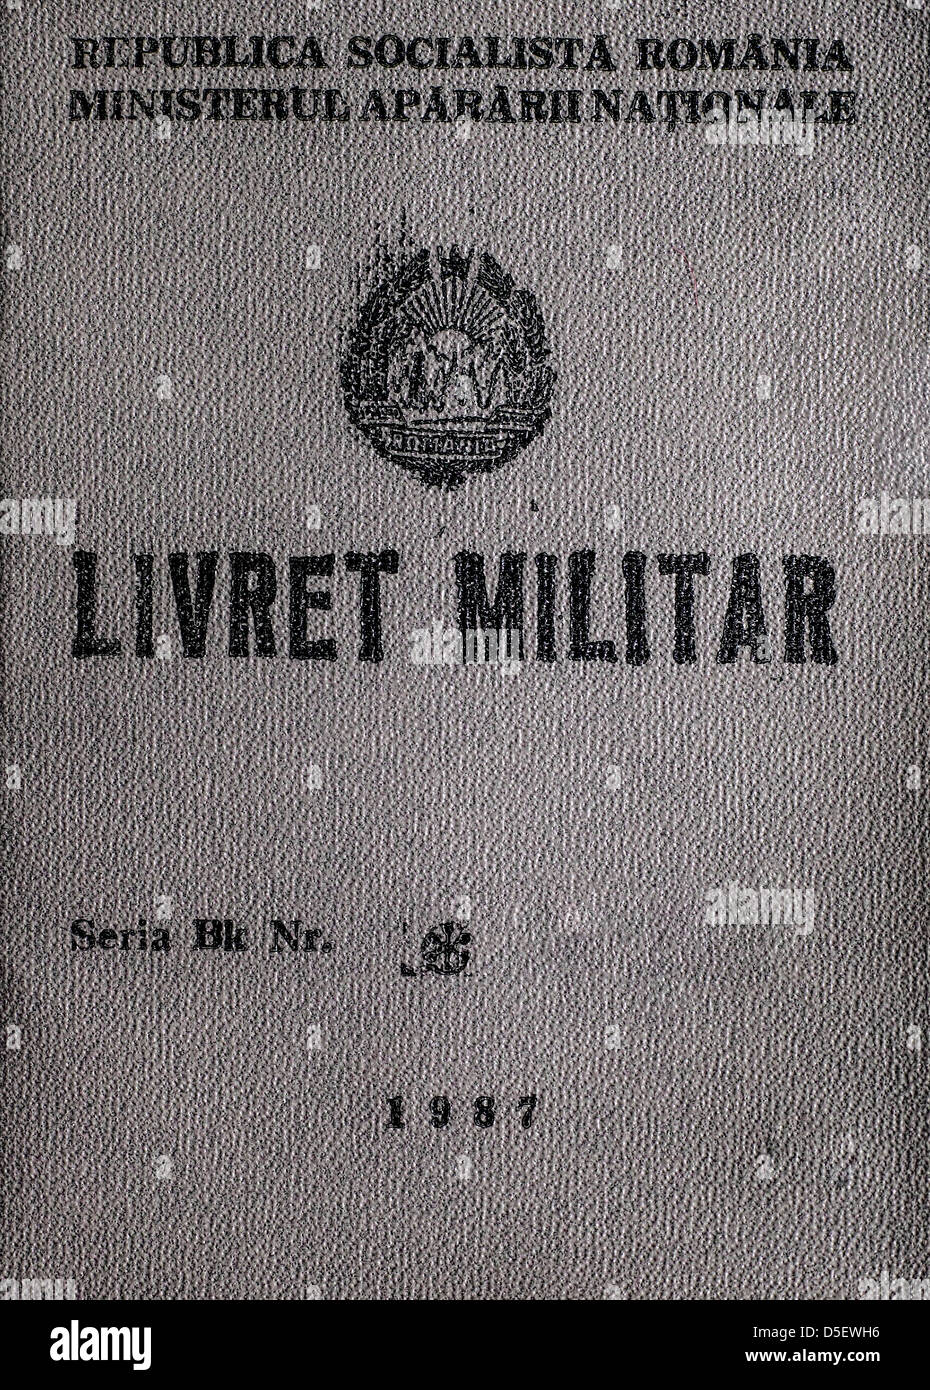 Tarjeta de identificación militar rumana (República Socialista de Rumania) Foto de stock